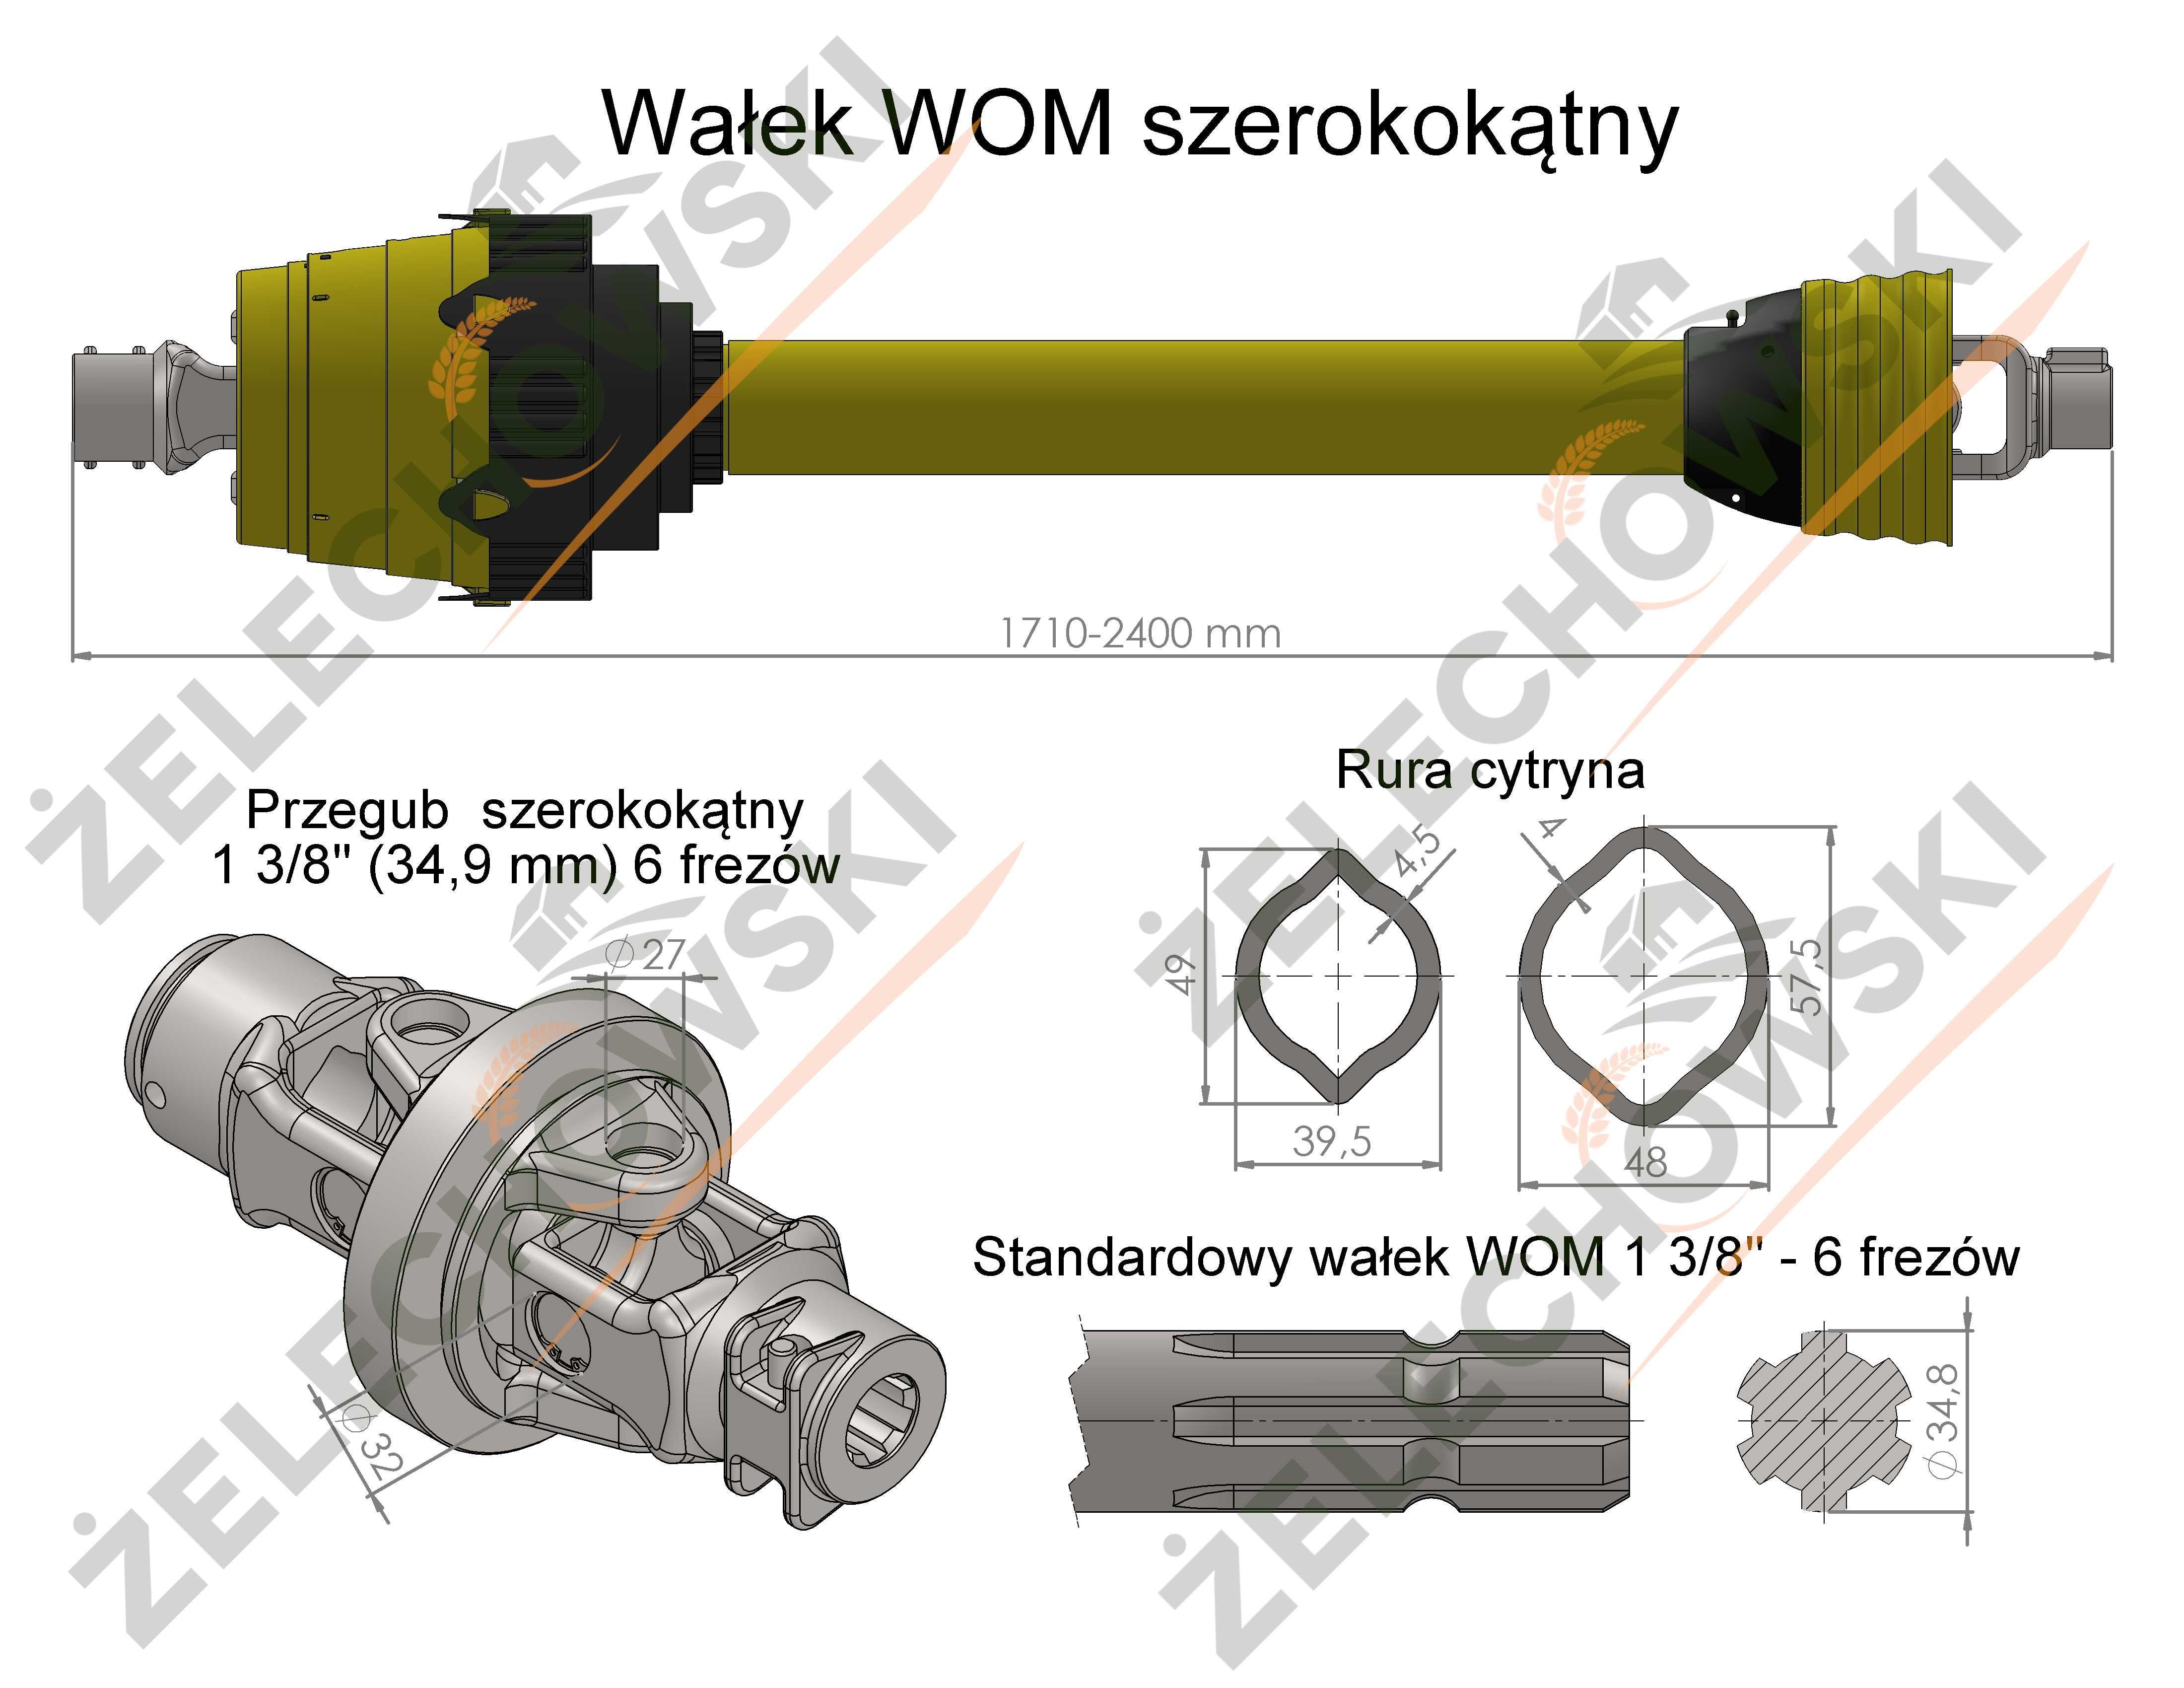 Wałek przekaźnika mocy WOM szerokokątny 1700 mm 695 Nm GWARANCJA